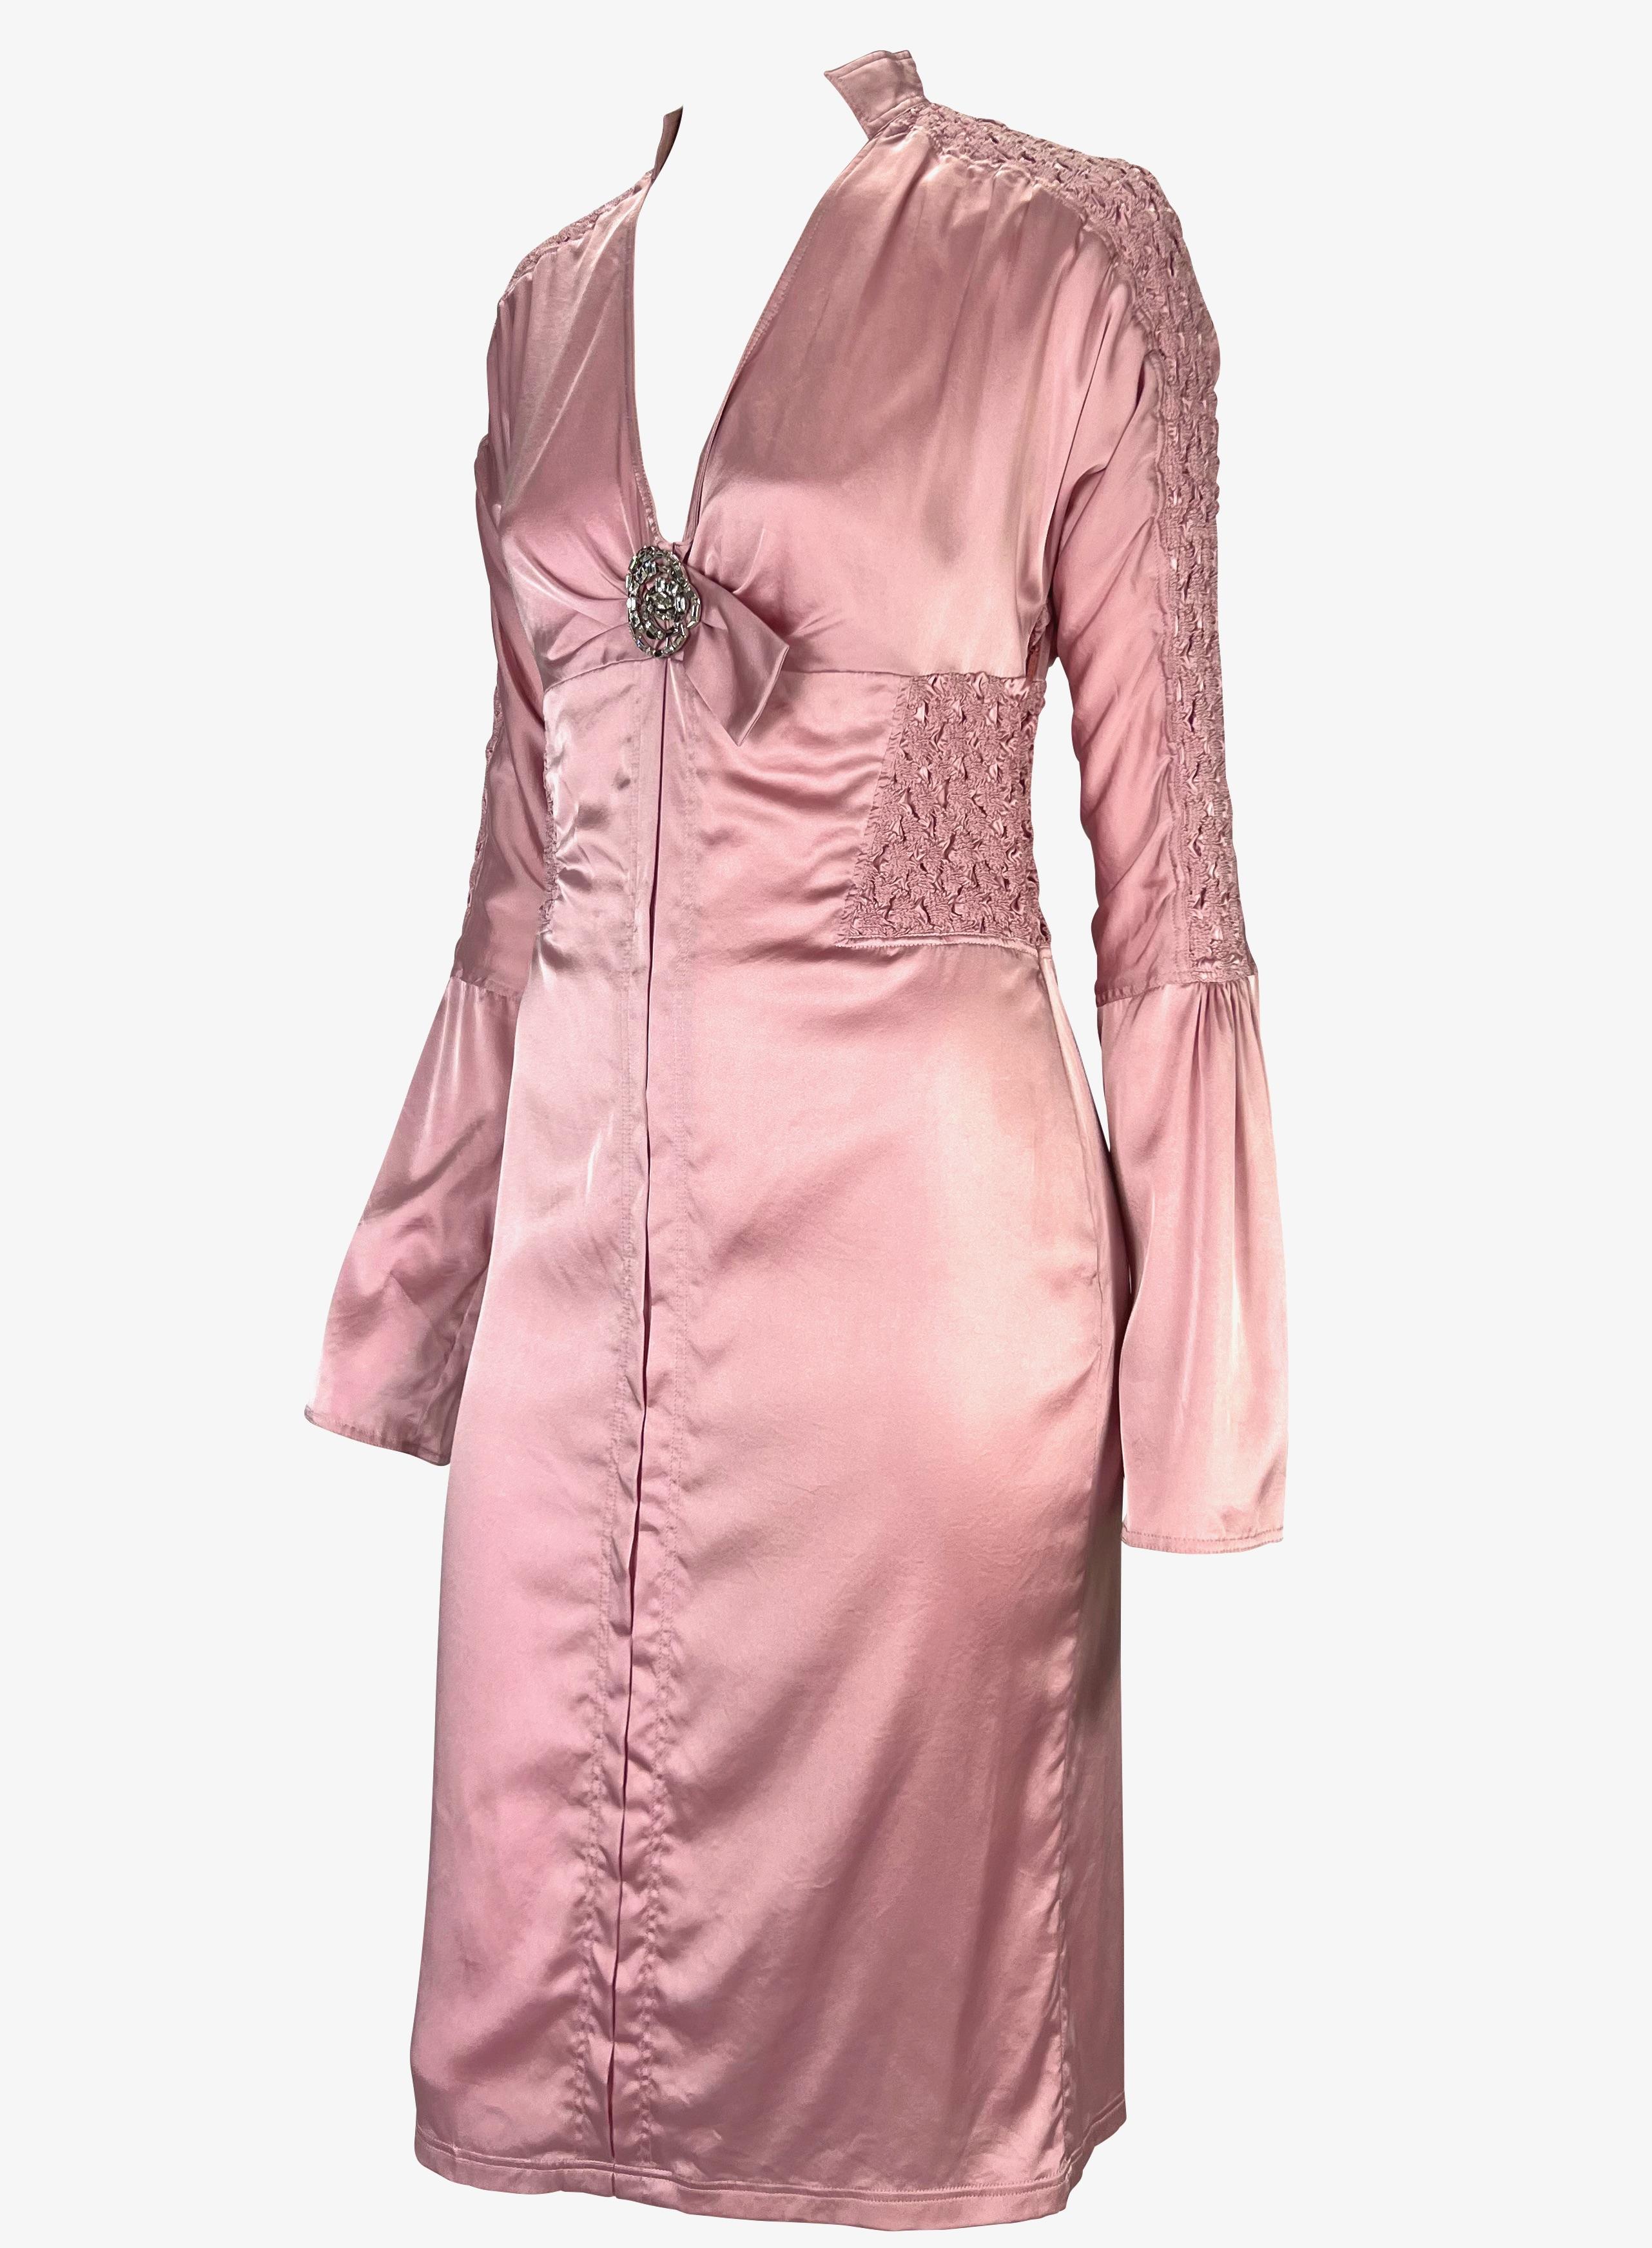 Ich präsentiere ein wunderschönes Gucci Kleid aus rosa Seide mit Rüschen, entworfen von Tom Ford. Dieses figurbetonte Kleid aus der Frühjahr/Sommer-Kollektion 2004 hat einen V-Ausschnitt, einen Stehkragen, lange Glockenärmel und einen ausgestellten